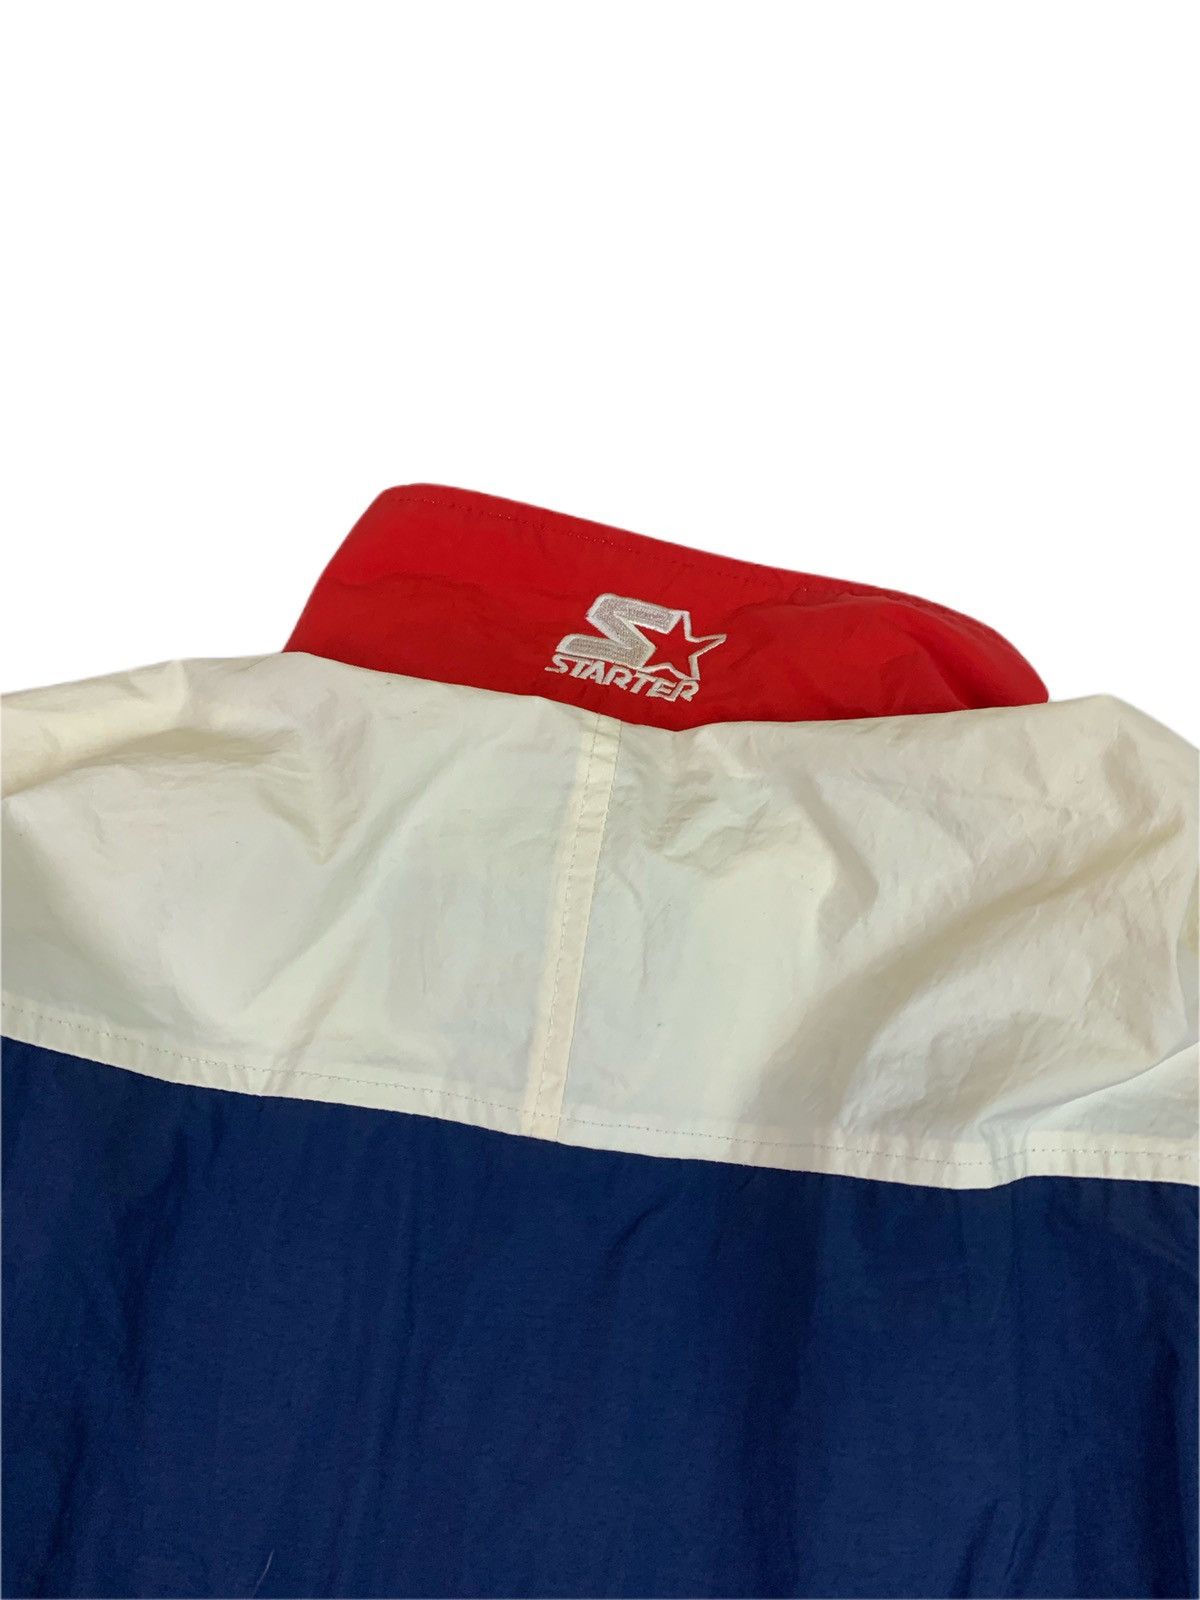 Vintage Vintage Montreal Expos Starter Windbreaker Jacket Size US XL / EU 56 / 4 - 5 Thumbnail